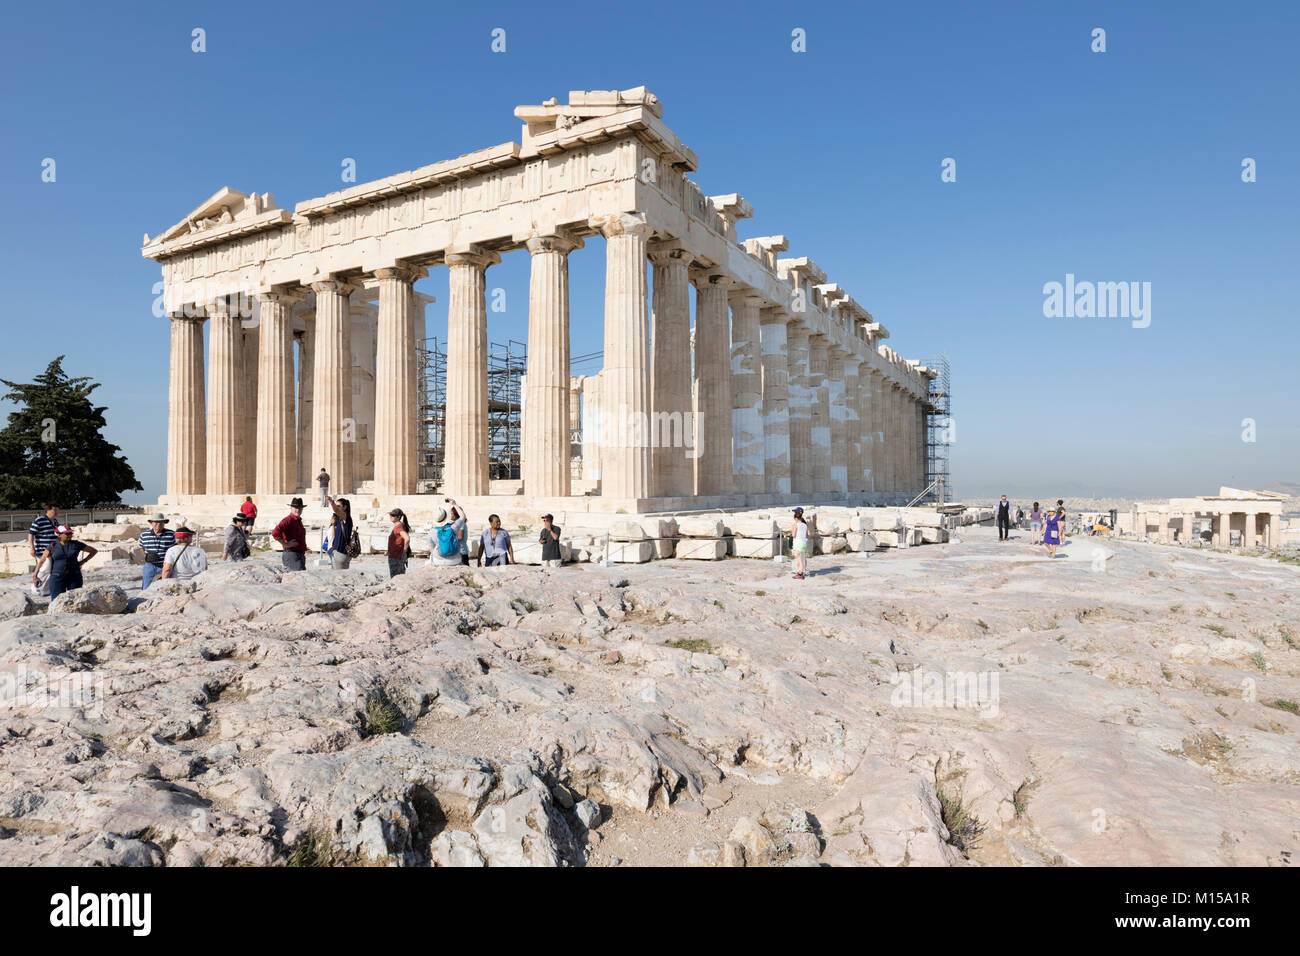 The ancient Parthenon atop the Acropolis, Athens, Greece, Europe Stock Photo